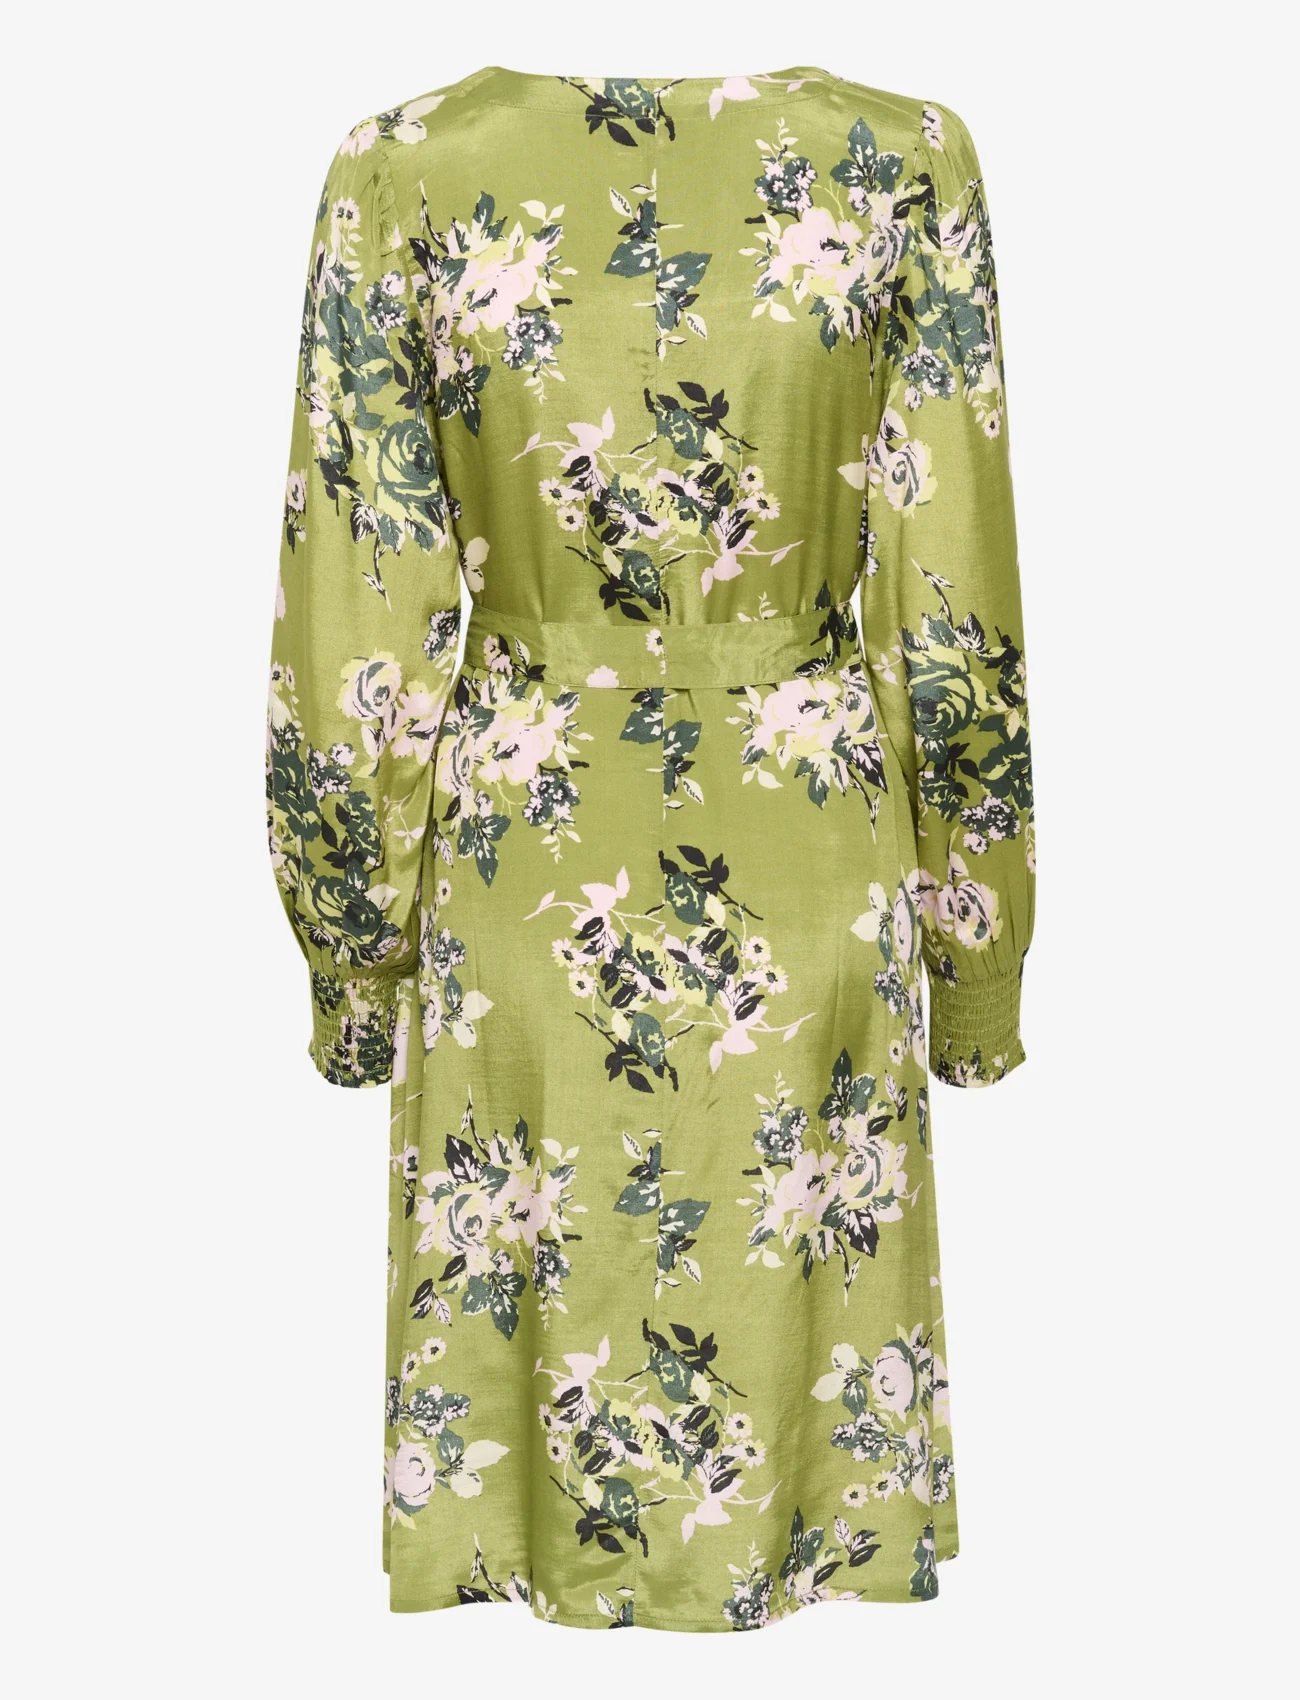 Kaffe - KApollie Short Dress Printed - summer dresses - green stencil flower print - 1